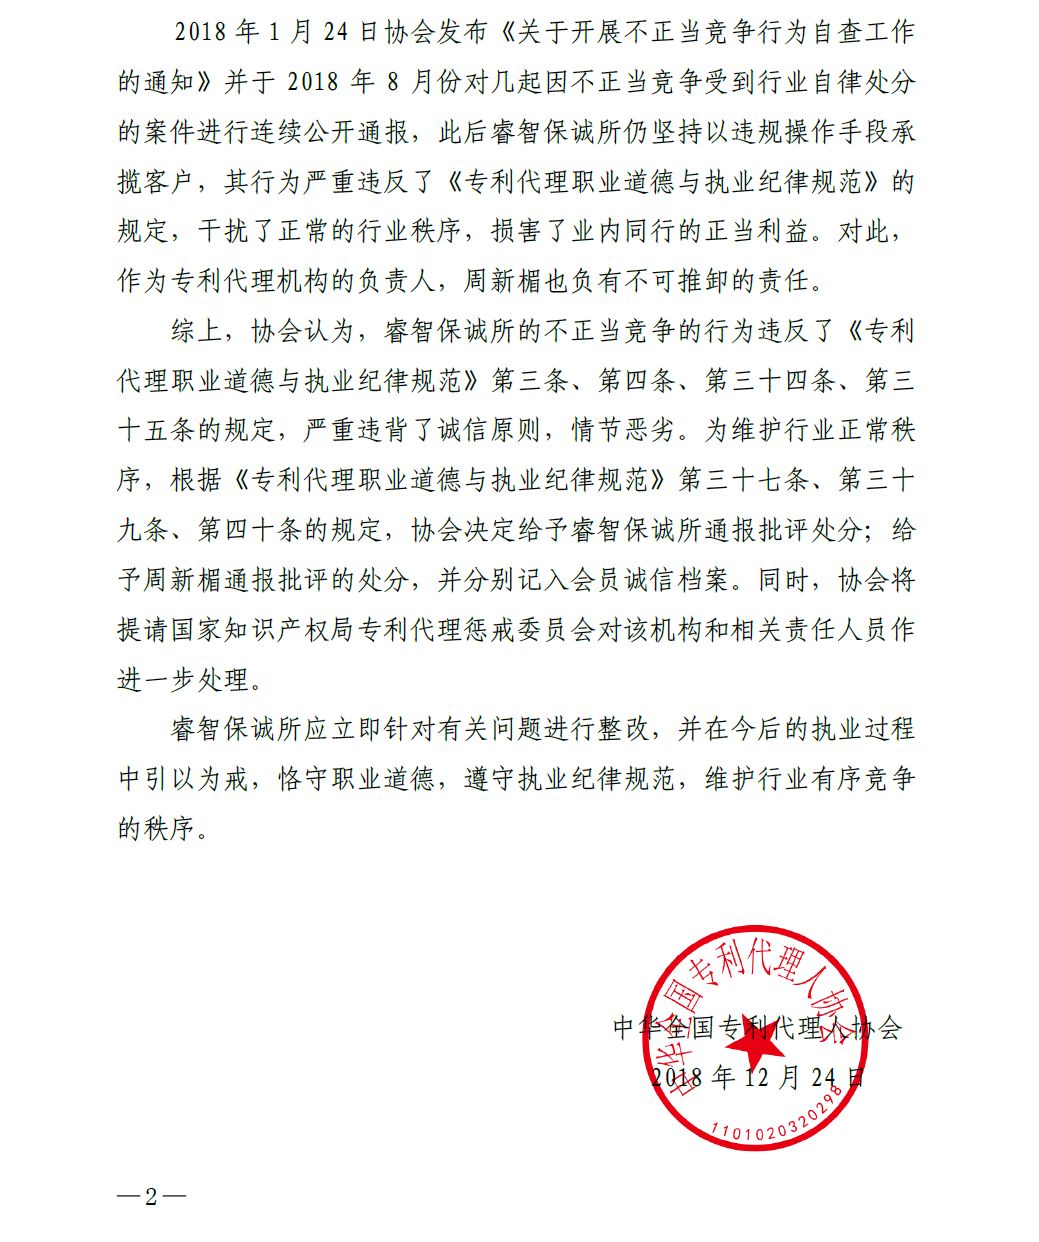 中华全国专代协会：给予北京睿智保诚专利代理事务所通报批评处分